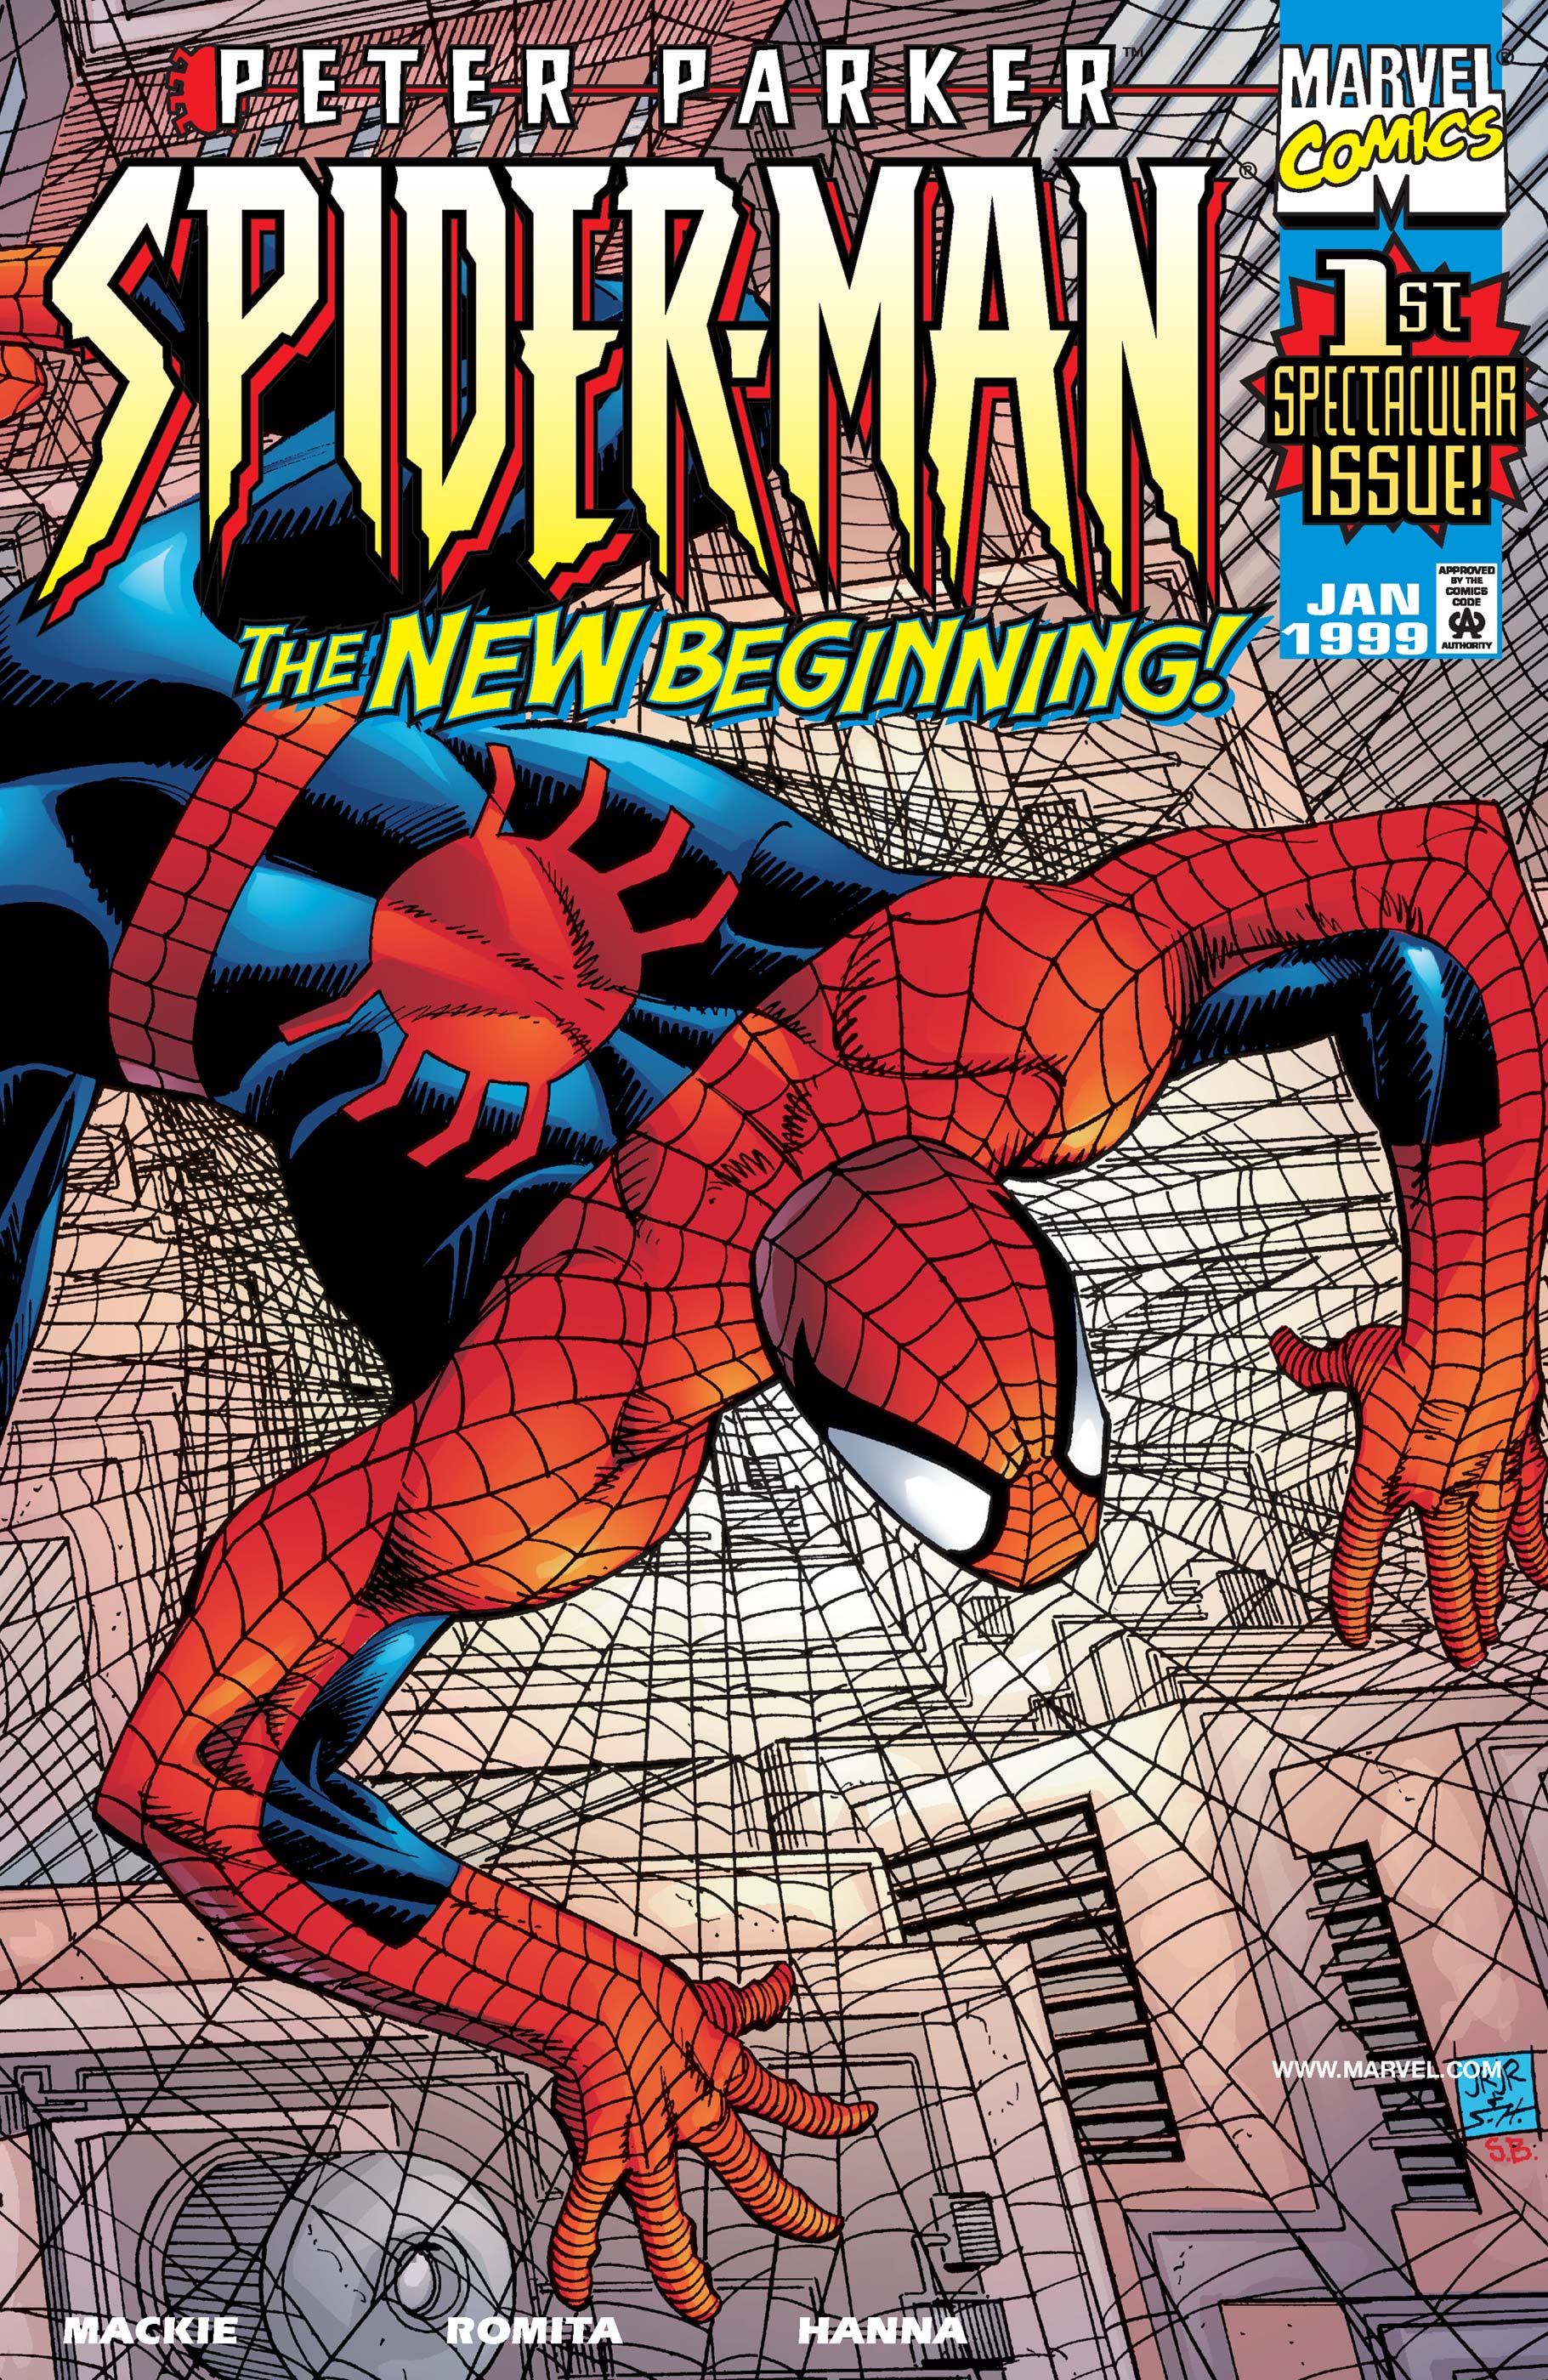 Peter Parker: Spider-Man (1999) #1